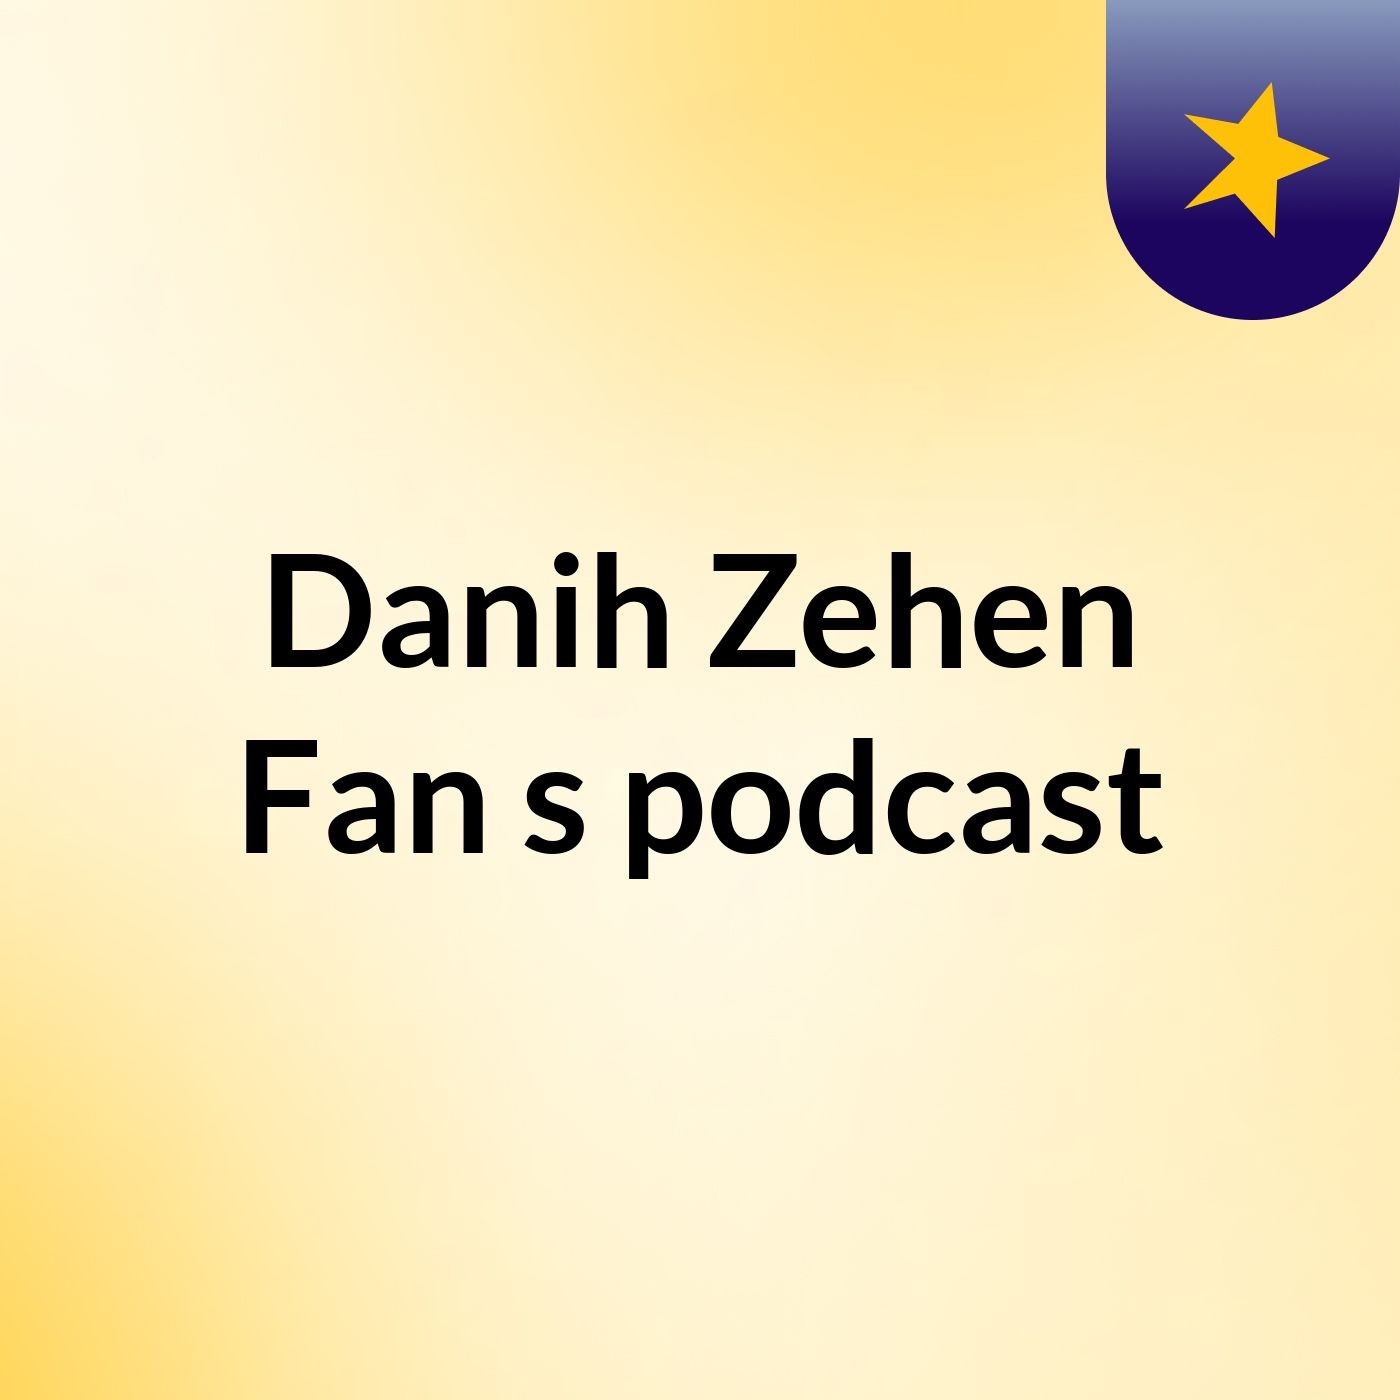 Episode 9 - Danih Zehen Fan's podcast